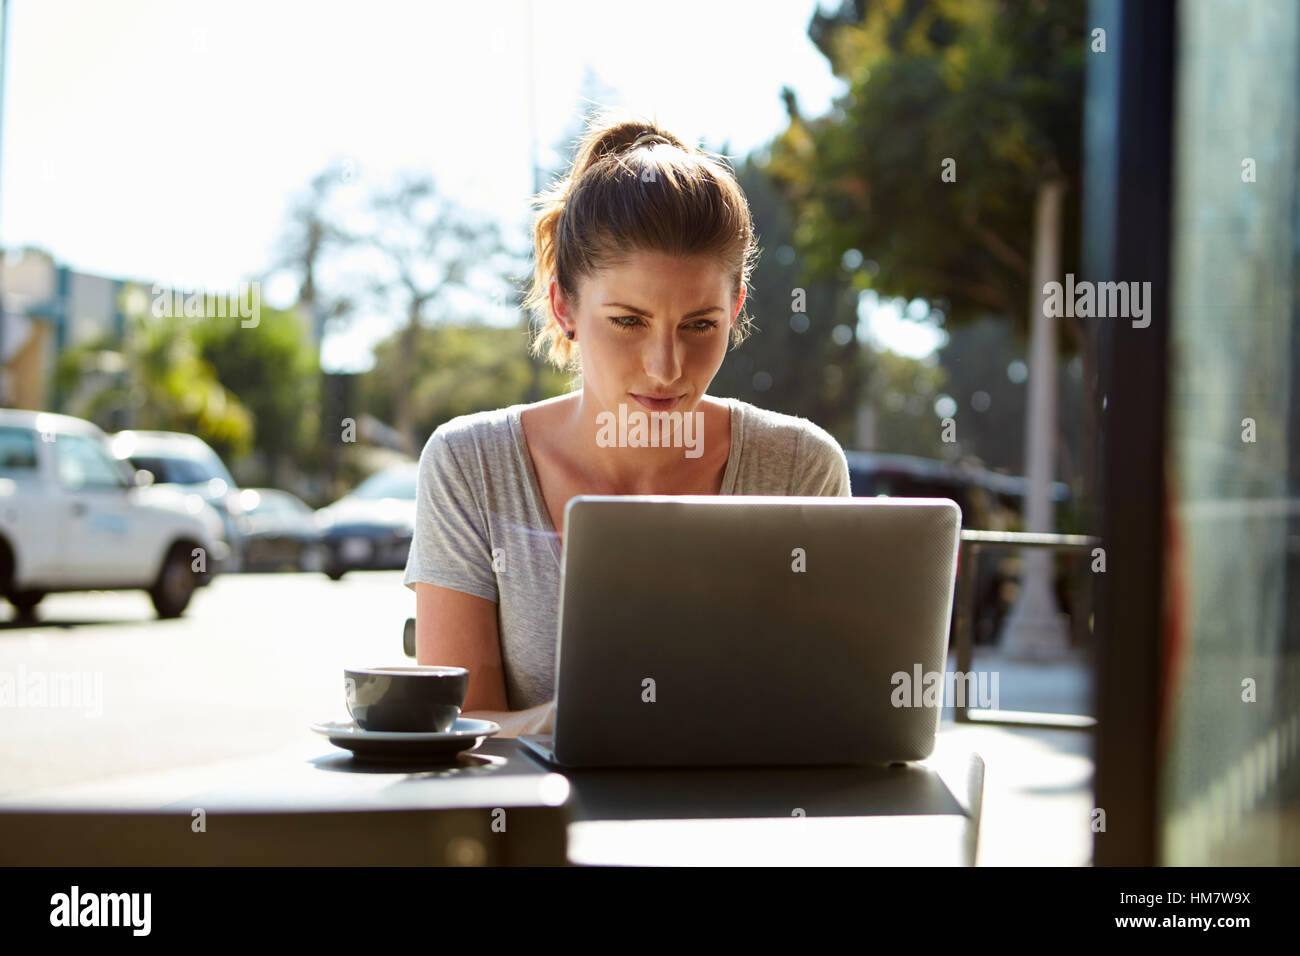 Junge Frau mit Haaren in einem Brötchen mit einem Laptop vor einem café Stockfoto